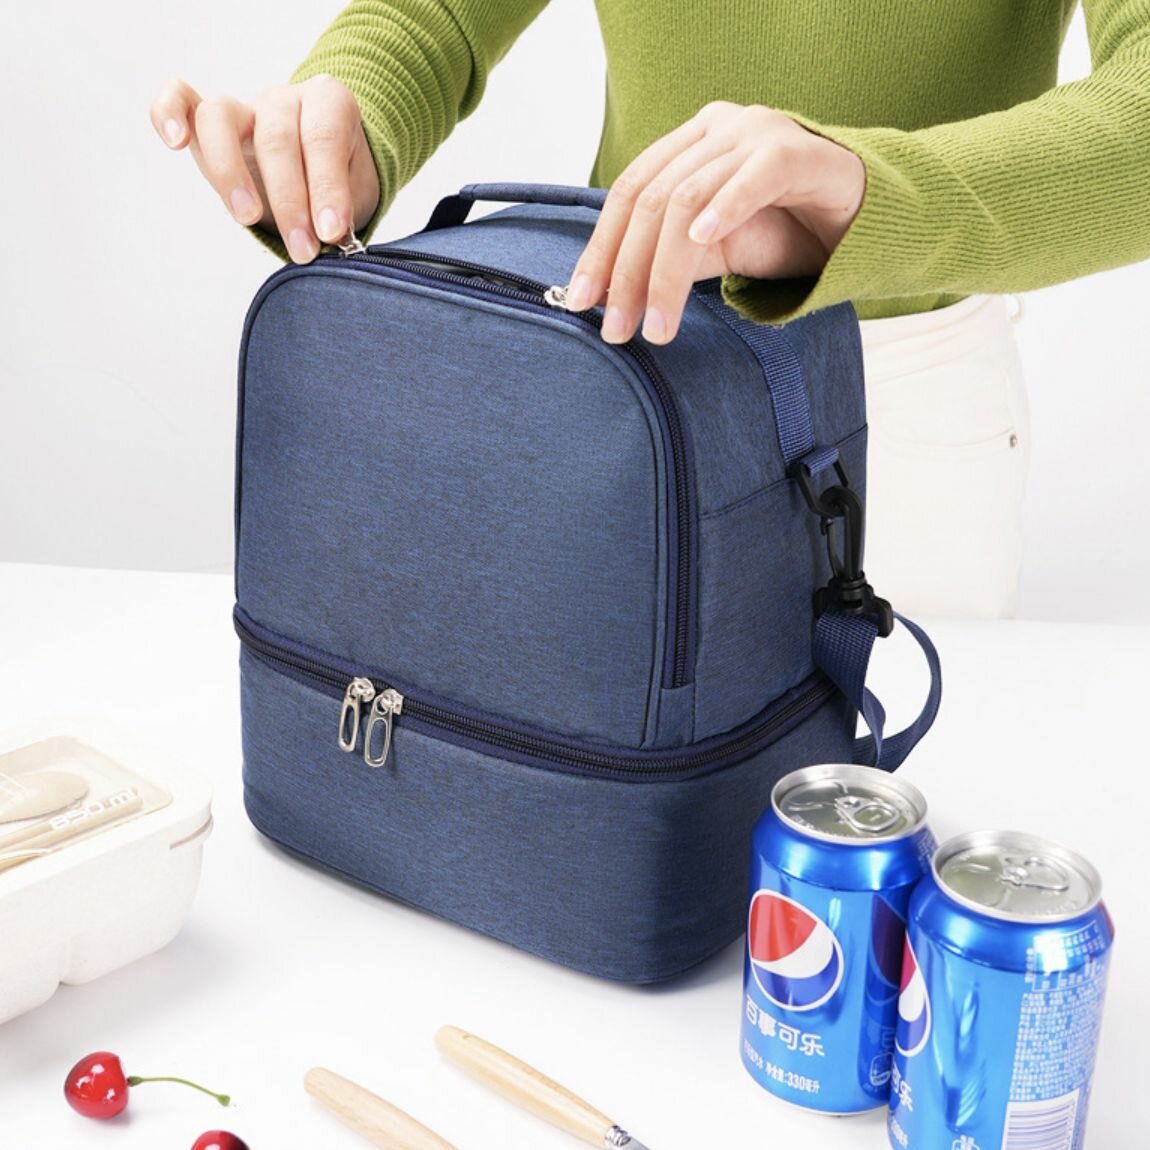 Термосумка для ланч-бокса с плечевым ремнем, сумка для обеда и еды, сумка-холодильник для пикника и путешествий